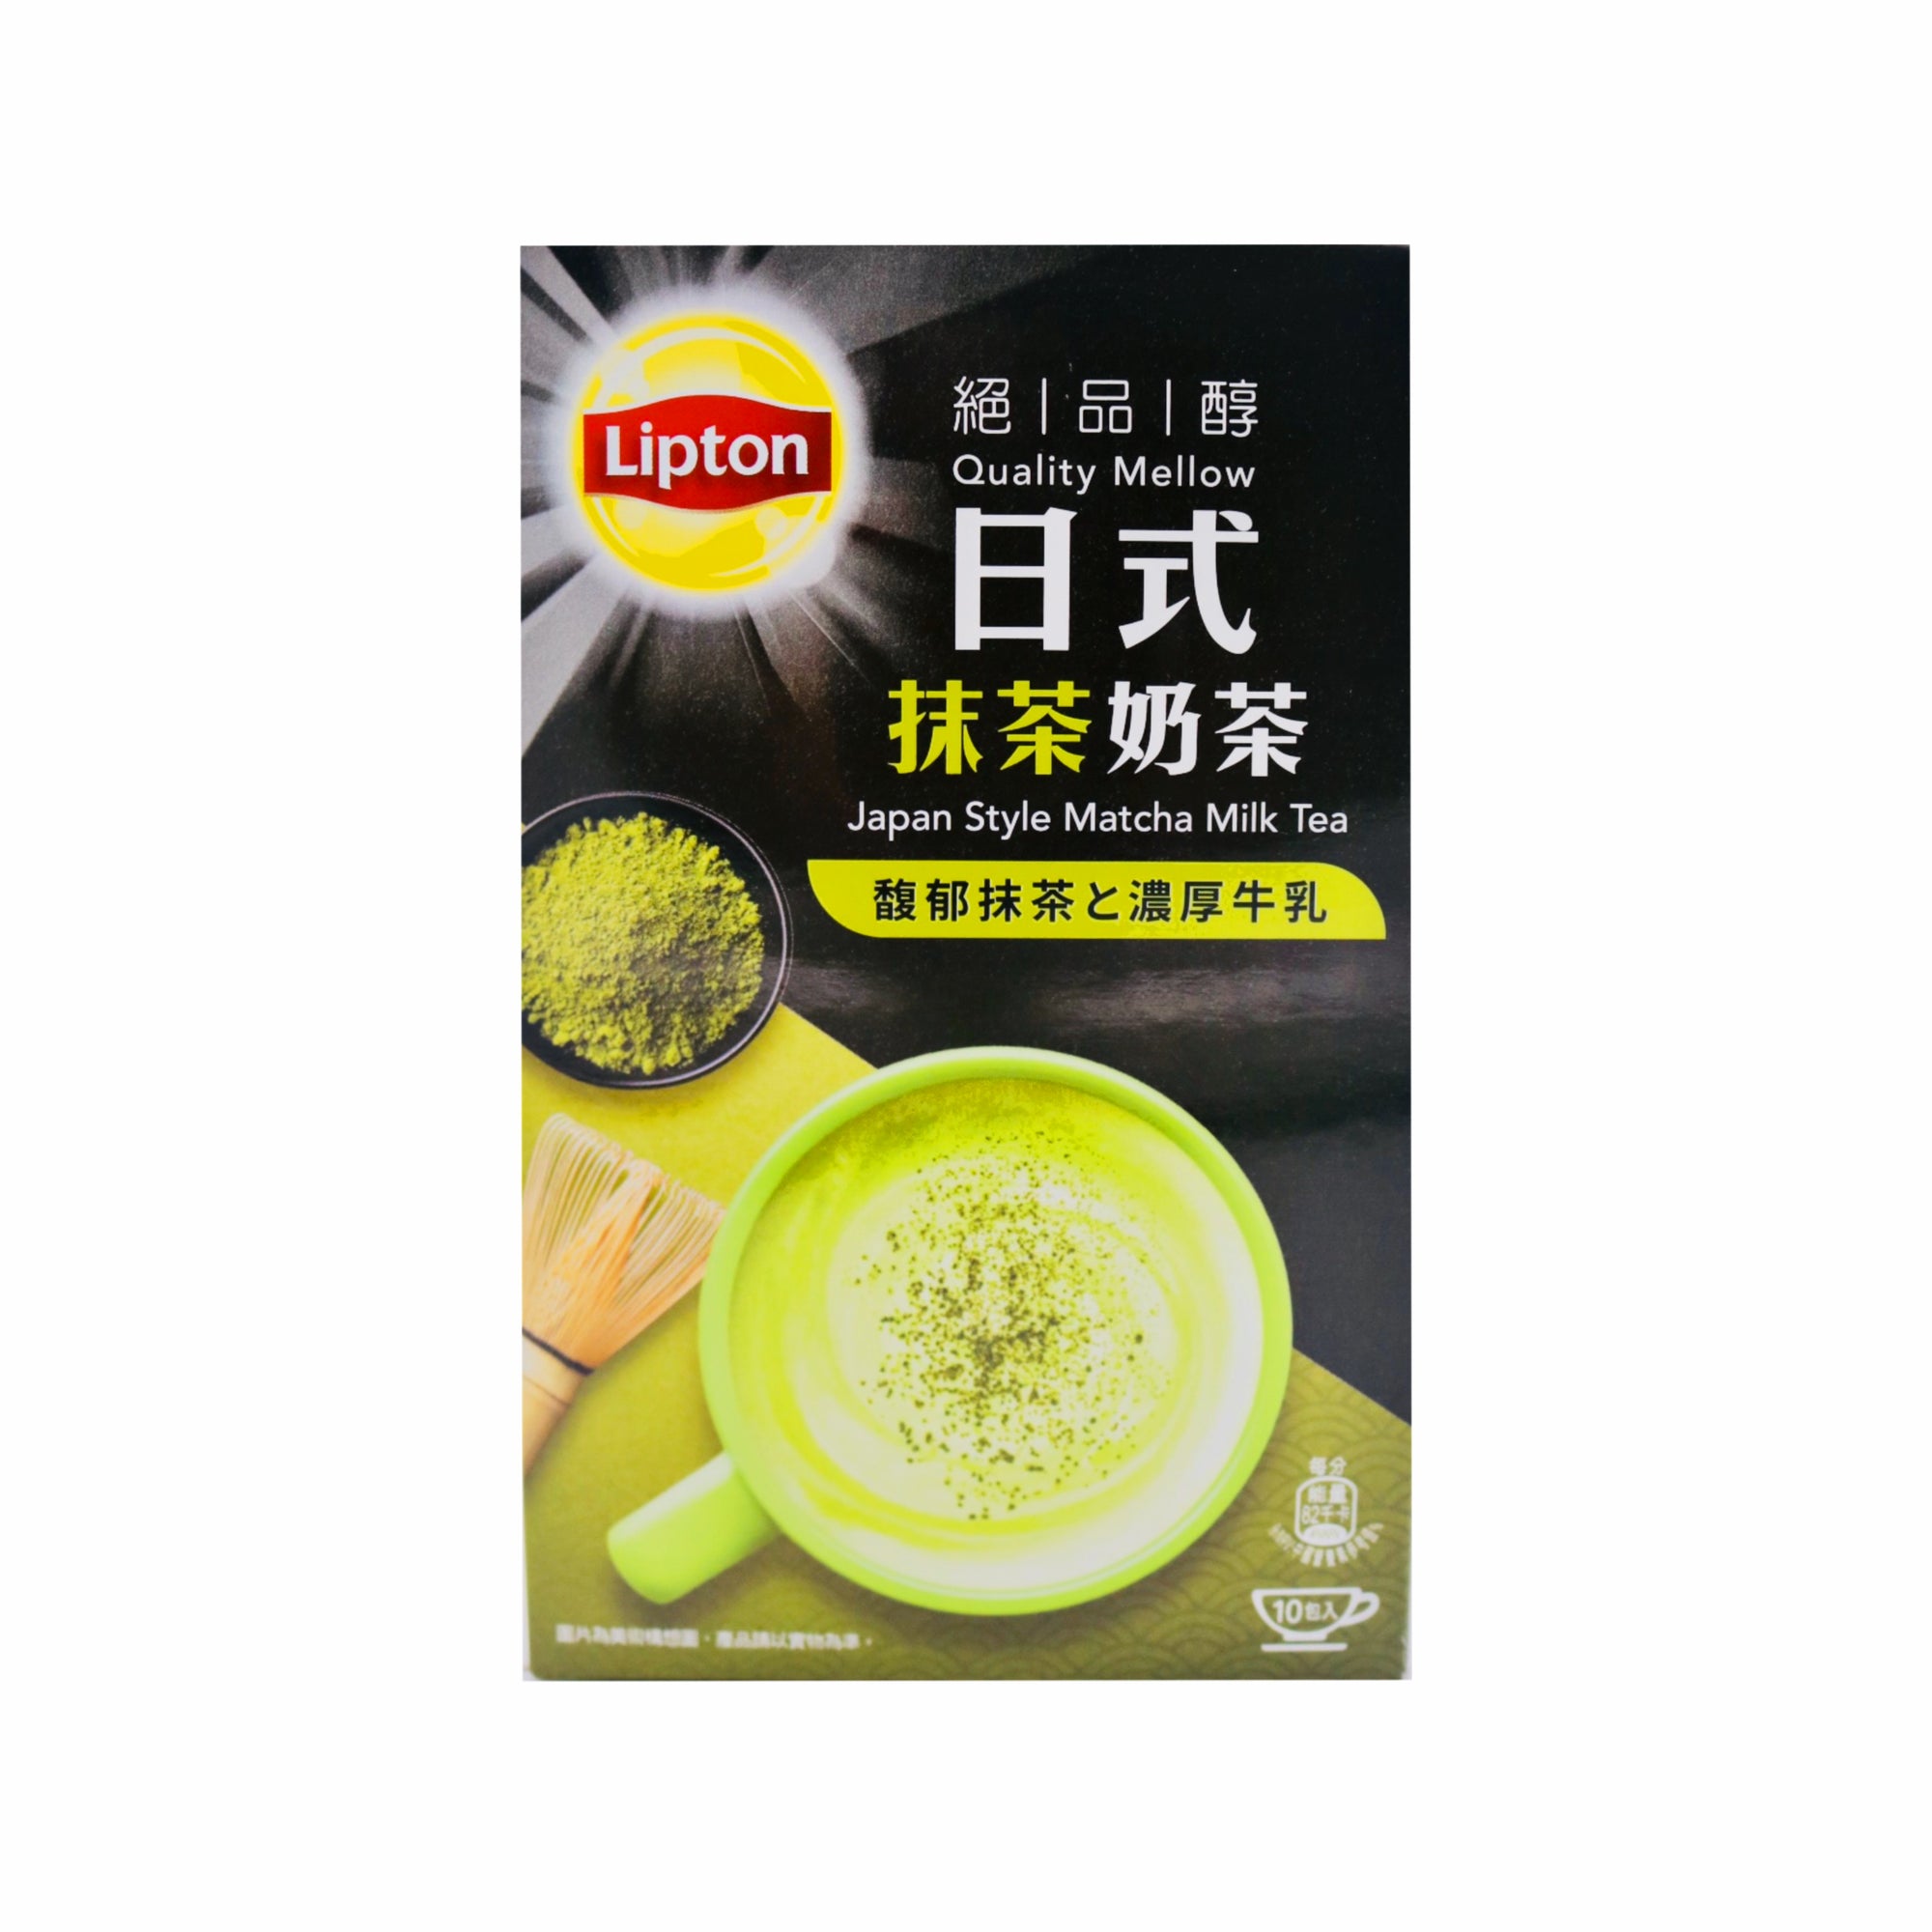 Lipton Japanese Matcha Milk Tea 立頓日式抹茶奶茶 (10*19g) 190g - Tuk Tuk Mart